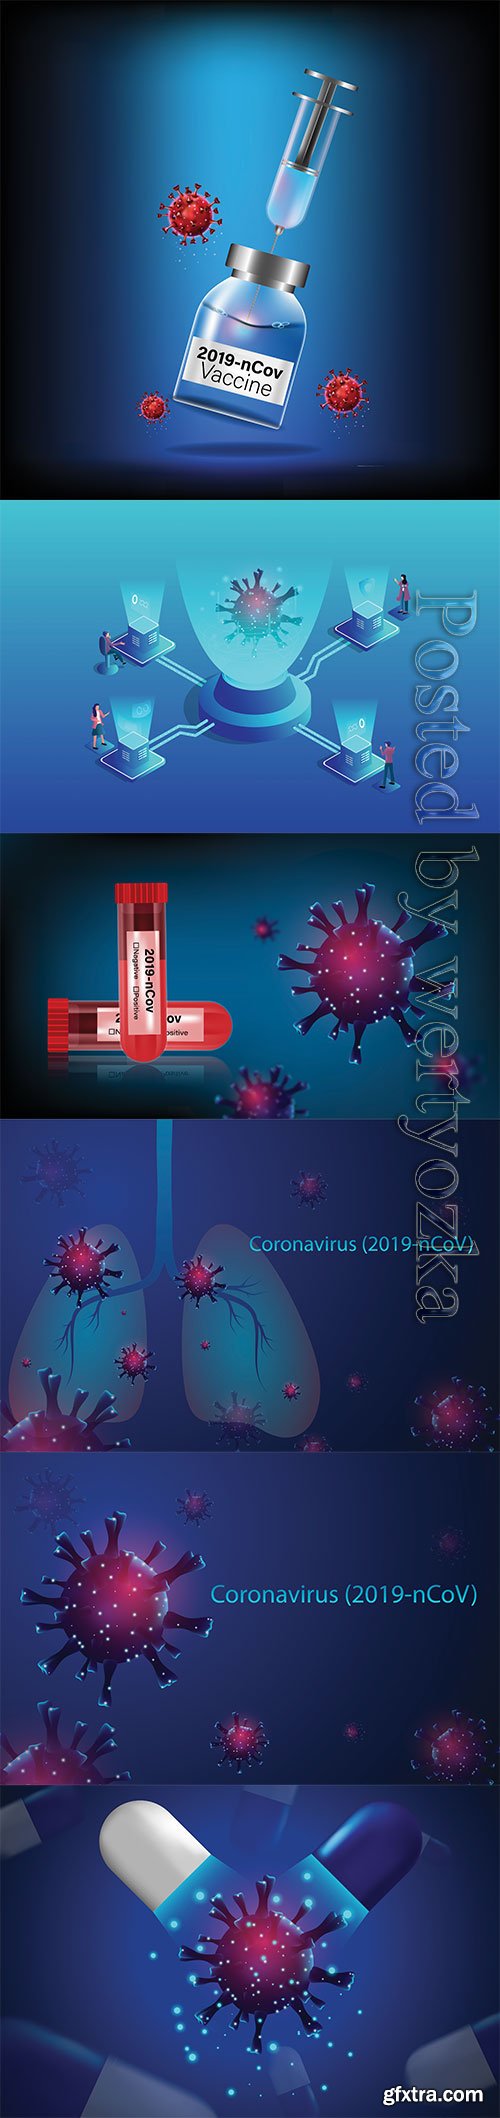 Pandemic virus and antiviral drug coronavirus concept